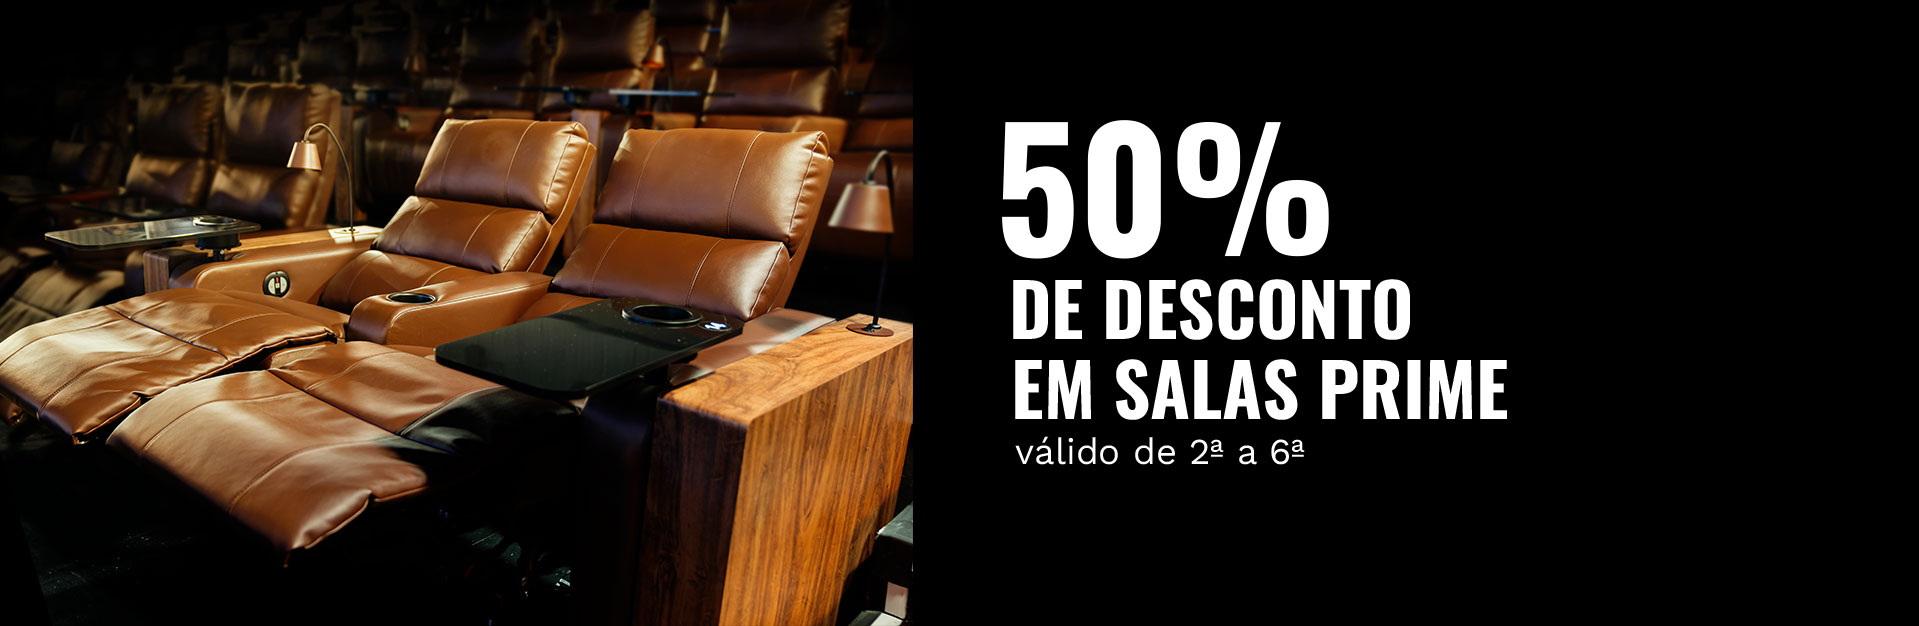 50% DE DESCONTO EM SALAS PRIME - válido DE 2ª a 6ª